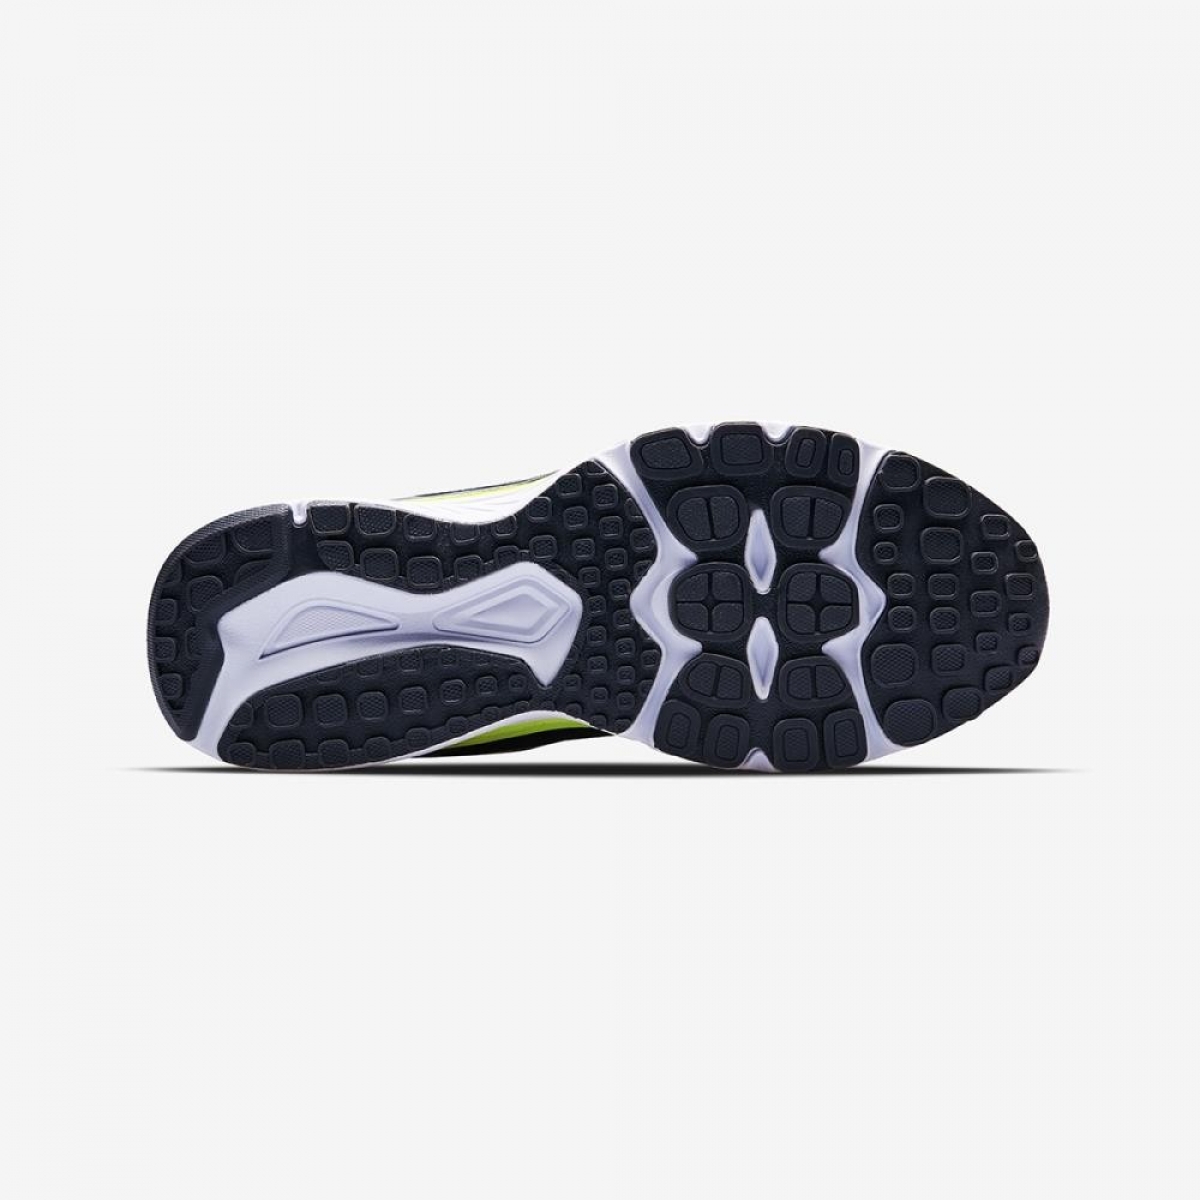 Flo Sonıc Runner Siyah Yazlık Günlük Bayan Koşu Spor Ayakkabı. 6